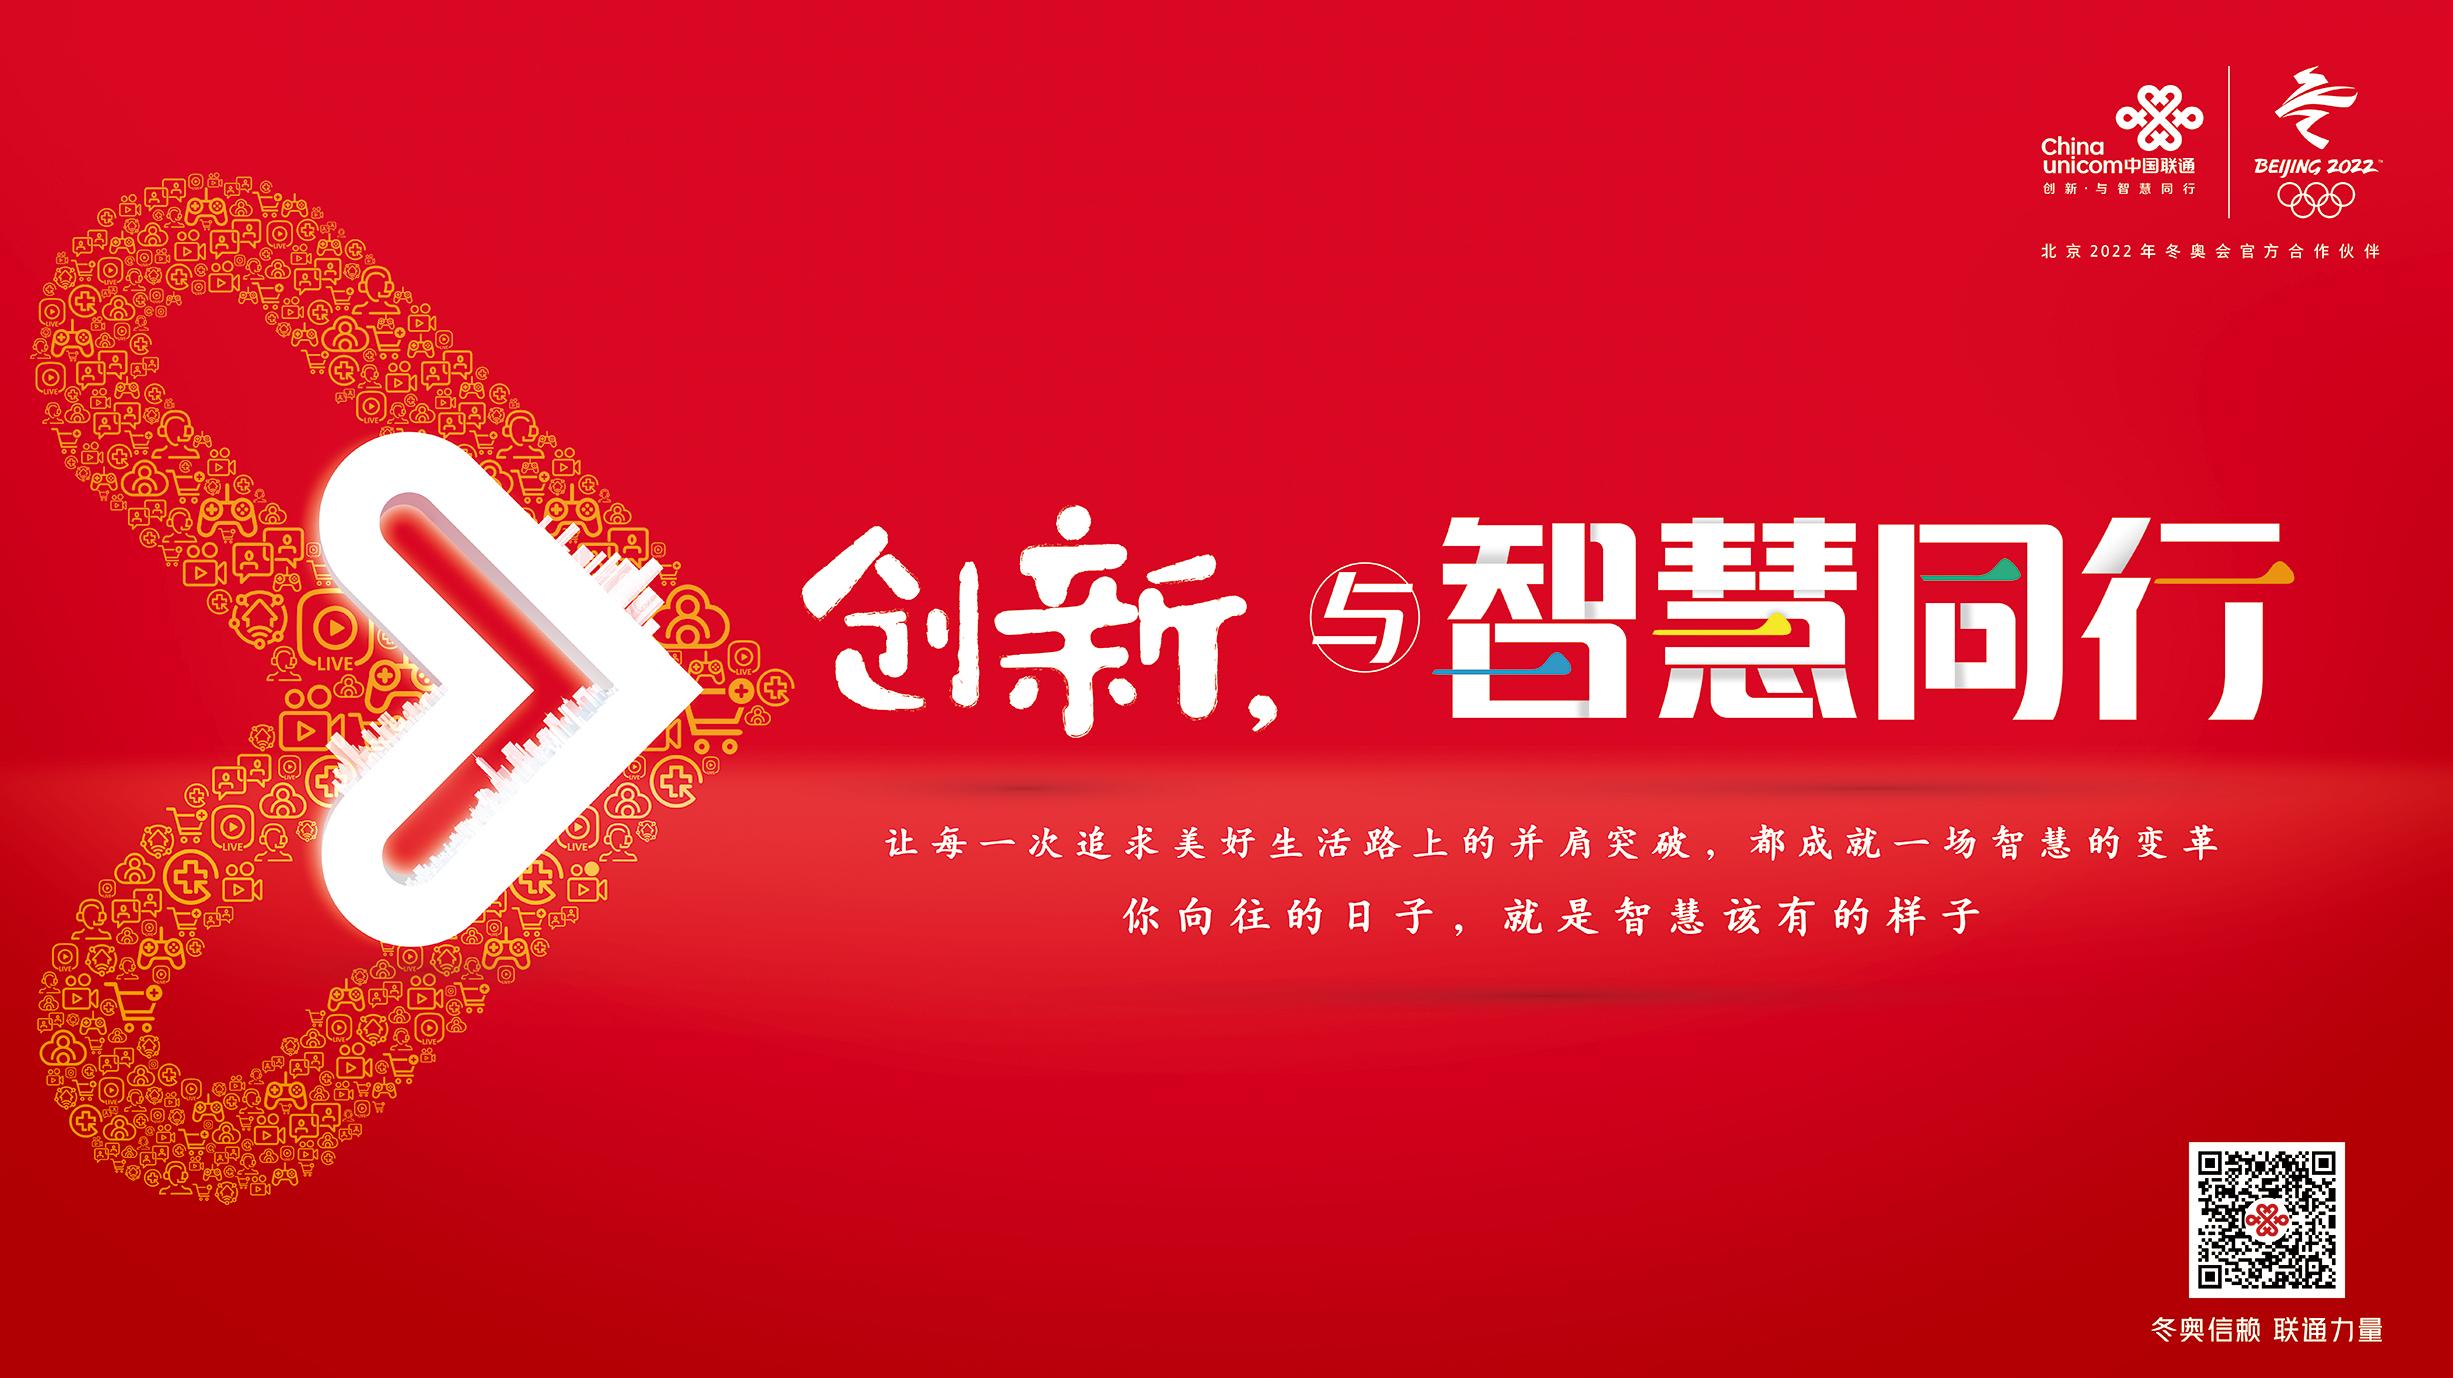 中国联通品牌焕新发布会在京举行